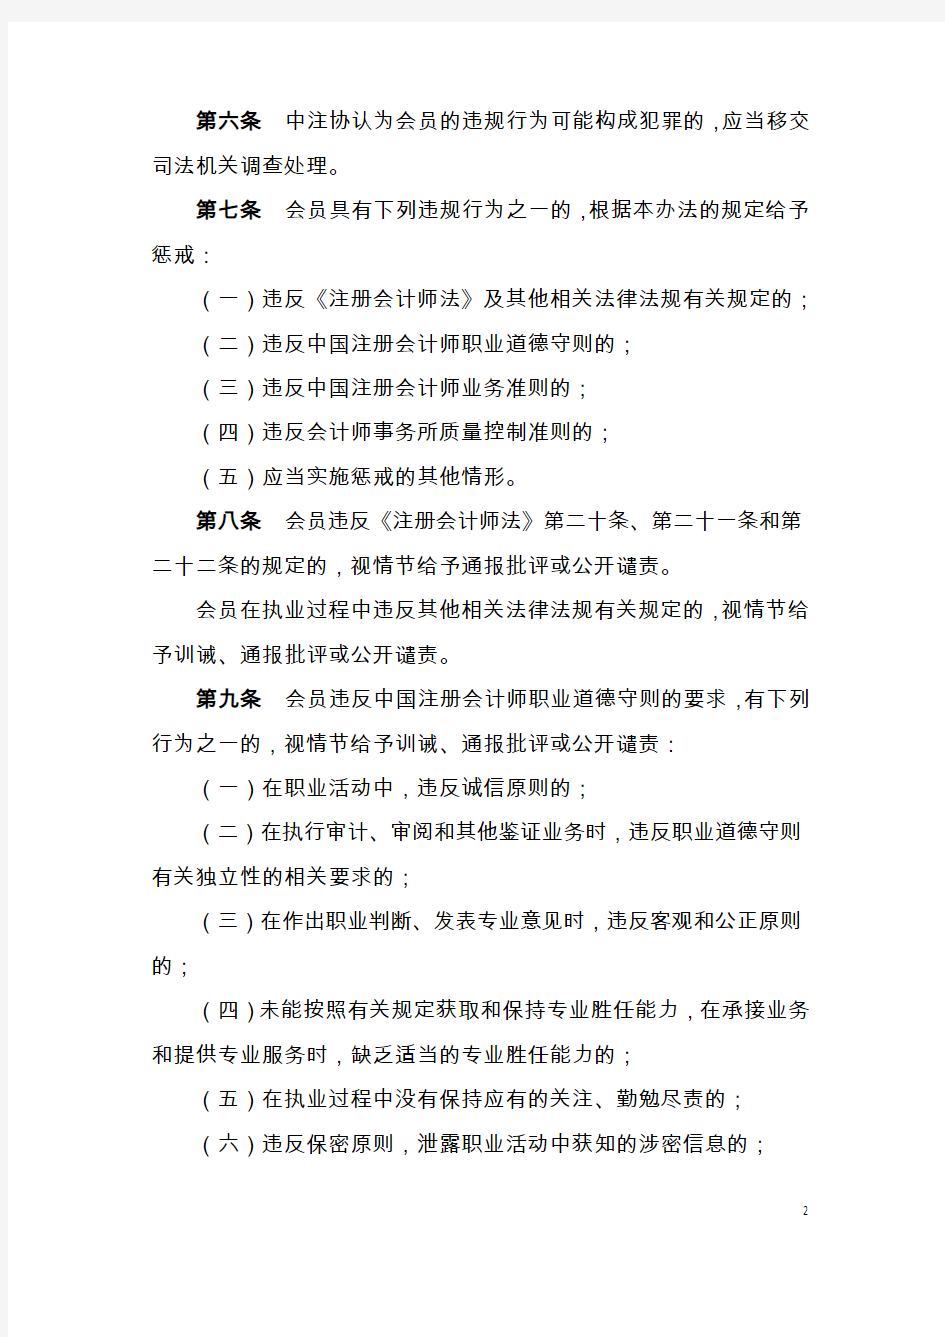 中国注册会计师协会会员执业违规行为惩戒办法